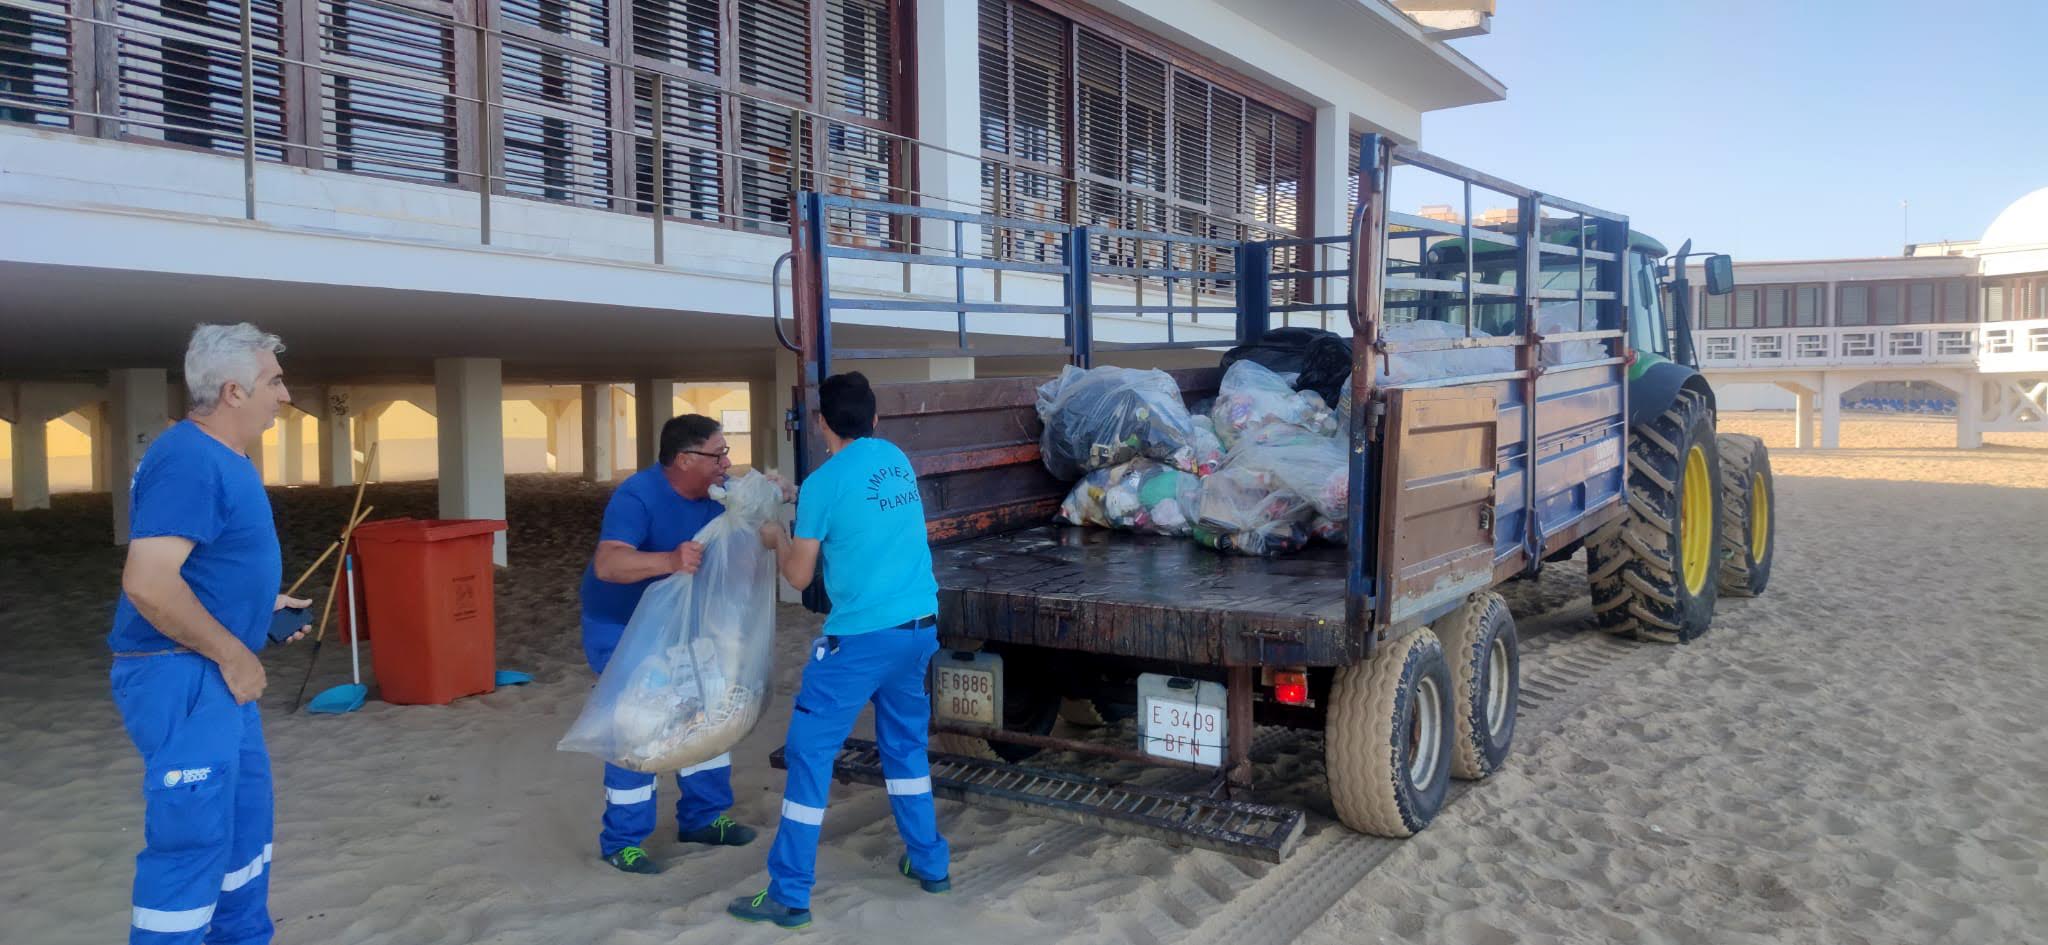 Operarios de limpieza trabajando en la playa de la Caleta.